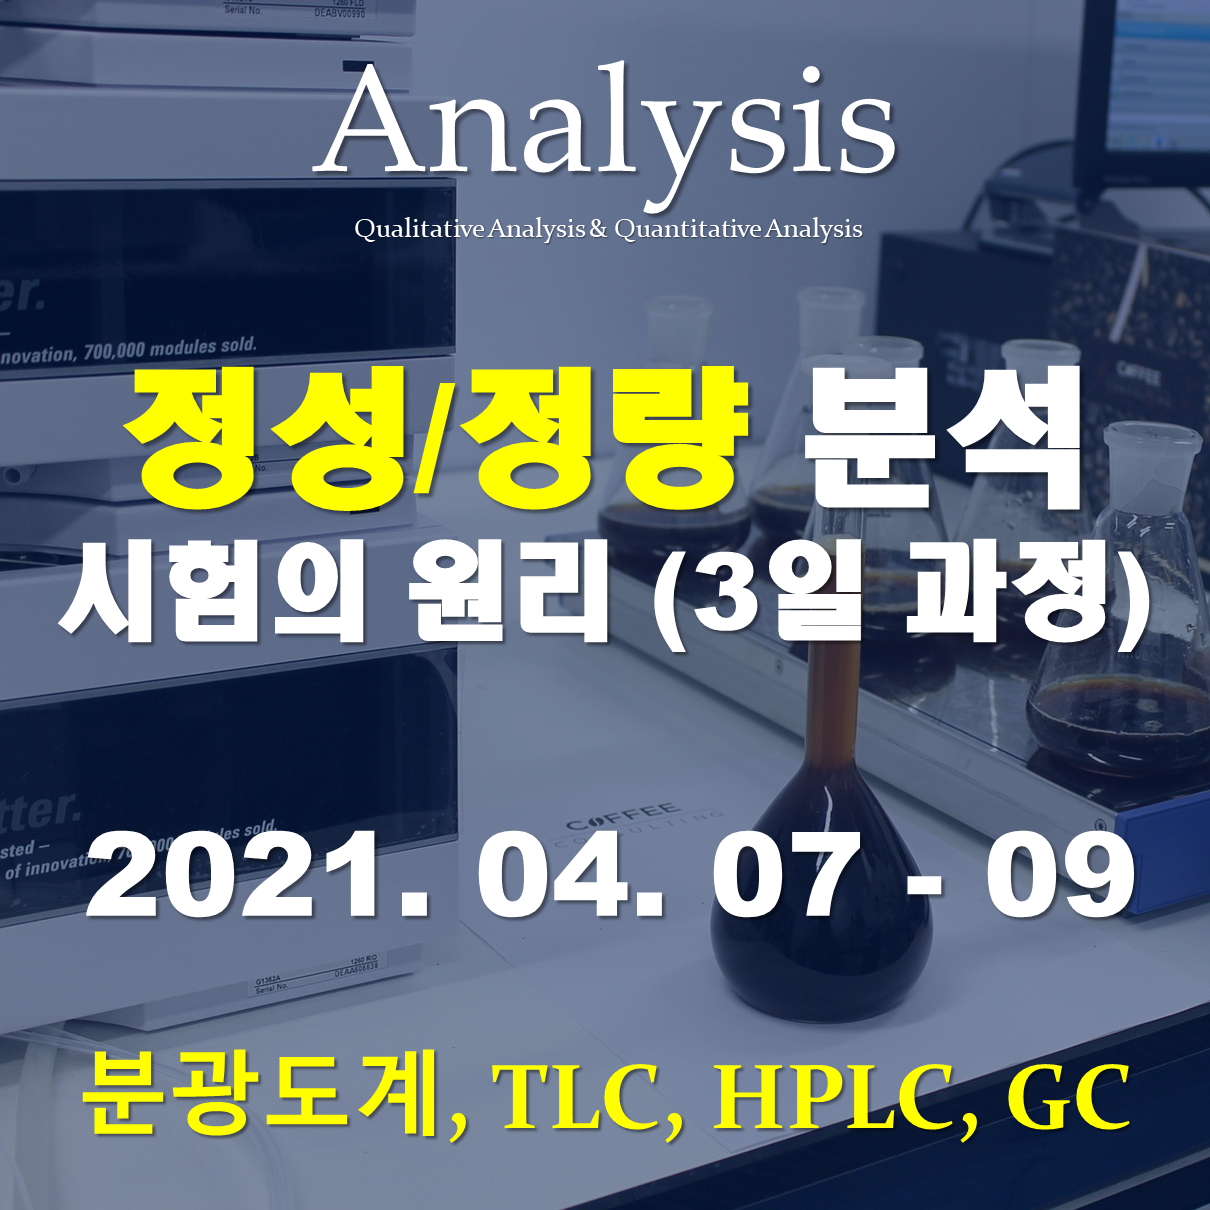 정성/정량 분석 시험의 원리 (분광도계, TLC, HPLC 및 GC를 이용한 정성/정량 분석)